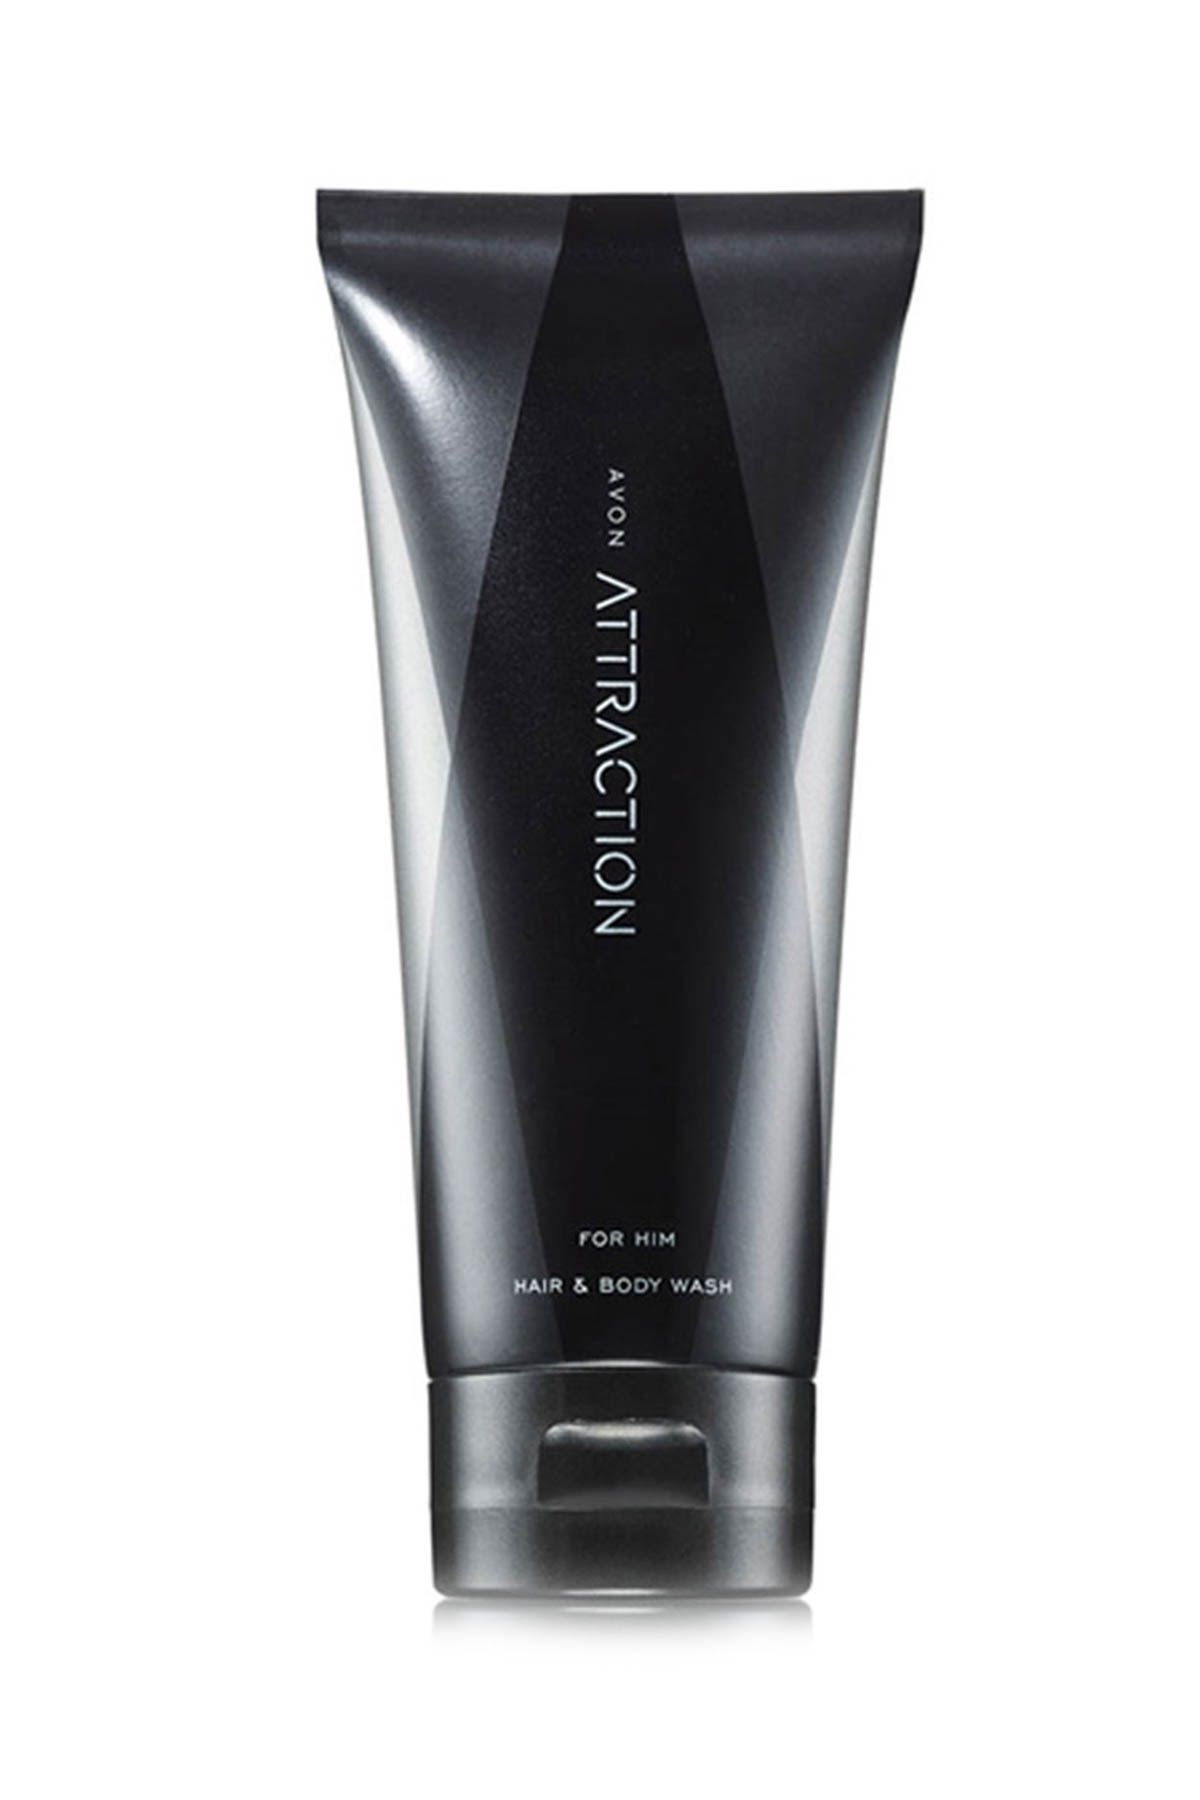 Avon Attraction Erkekler için Saç ve Vücut Şampuanı 200 ml 8681298961284